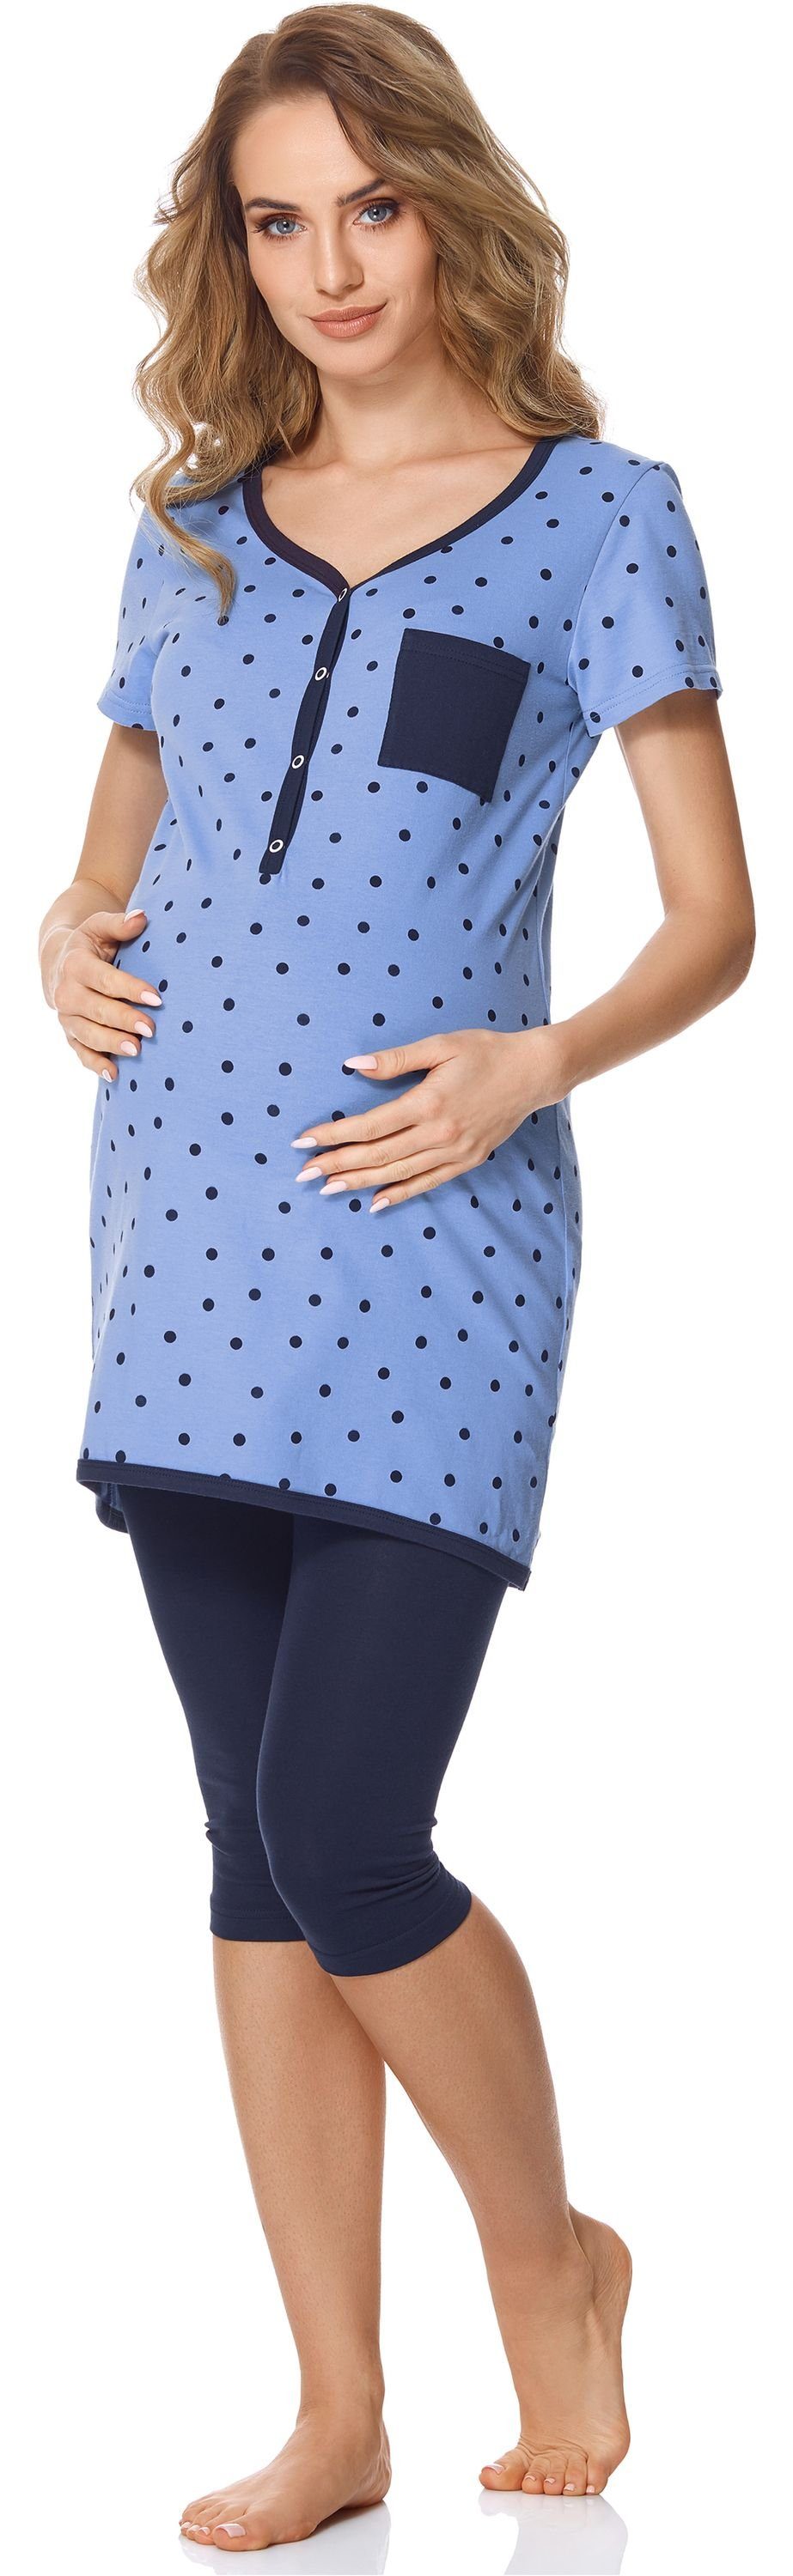 Bellivalini Umstandspyjama Damen Umstands Pyjama mit Stillfunktion BLV50-126 mit Brusttasche Blau Punkte/Marineblau